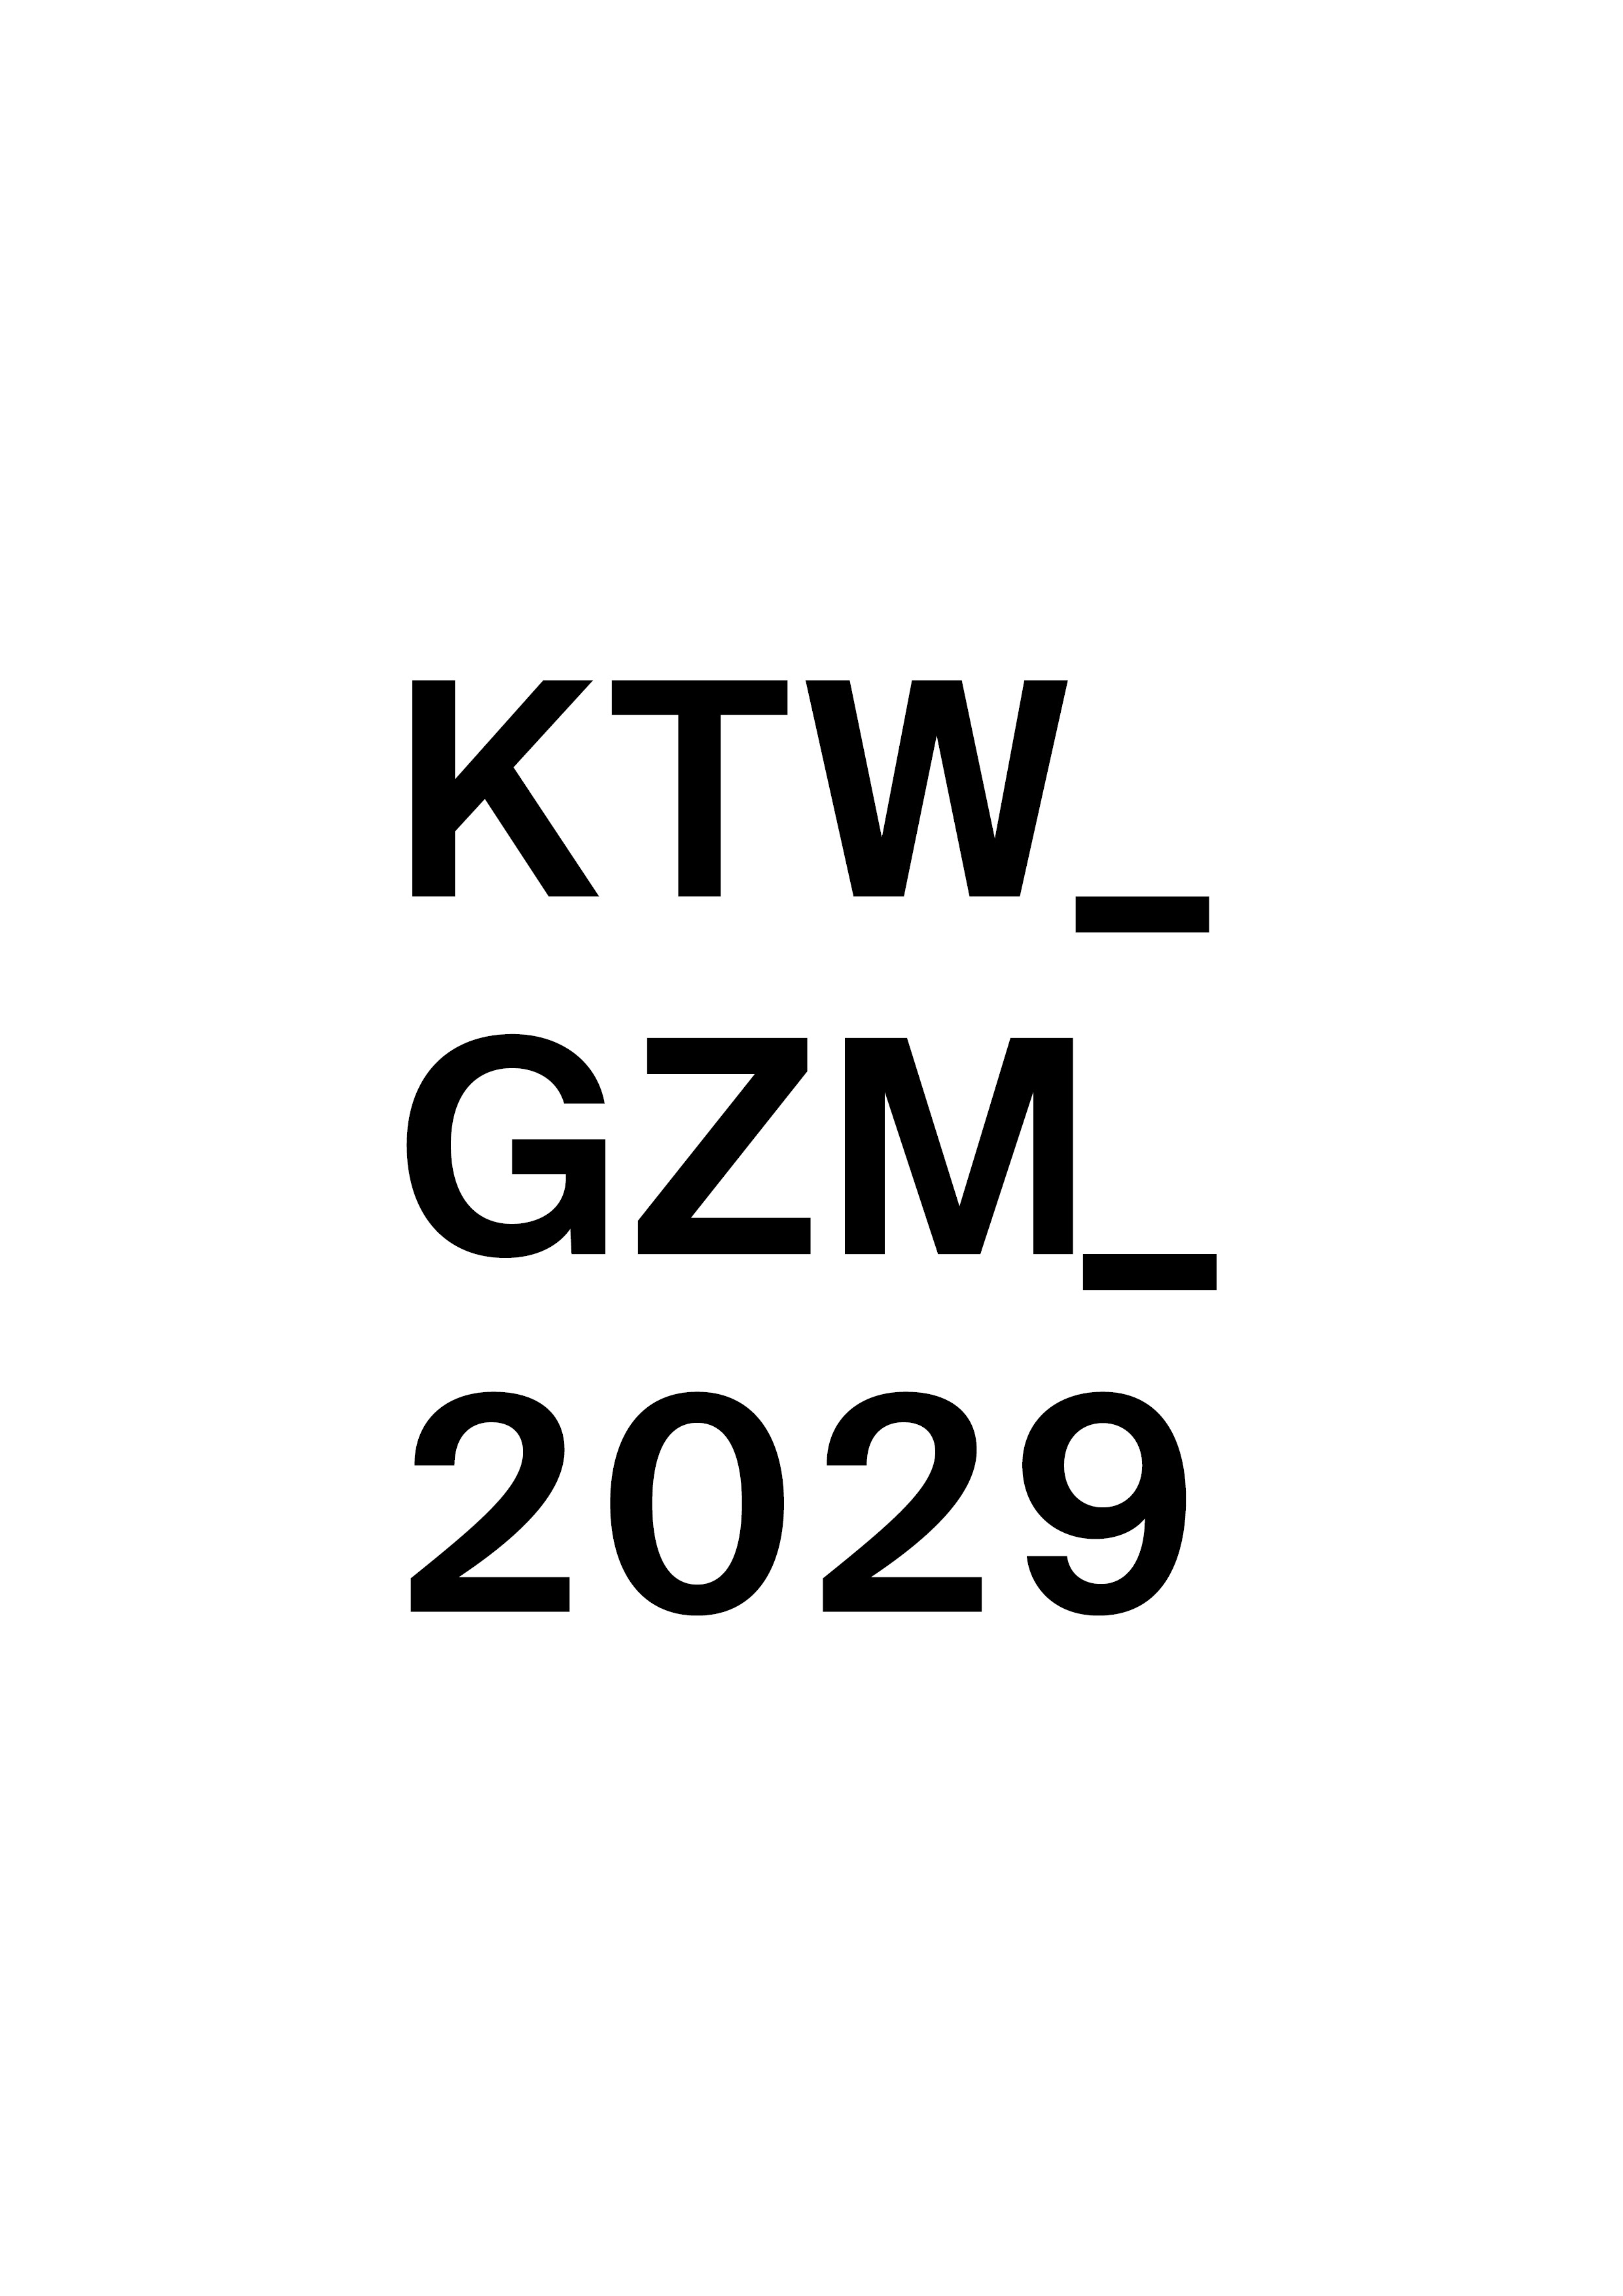 KTZ GZM 2029